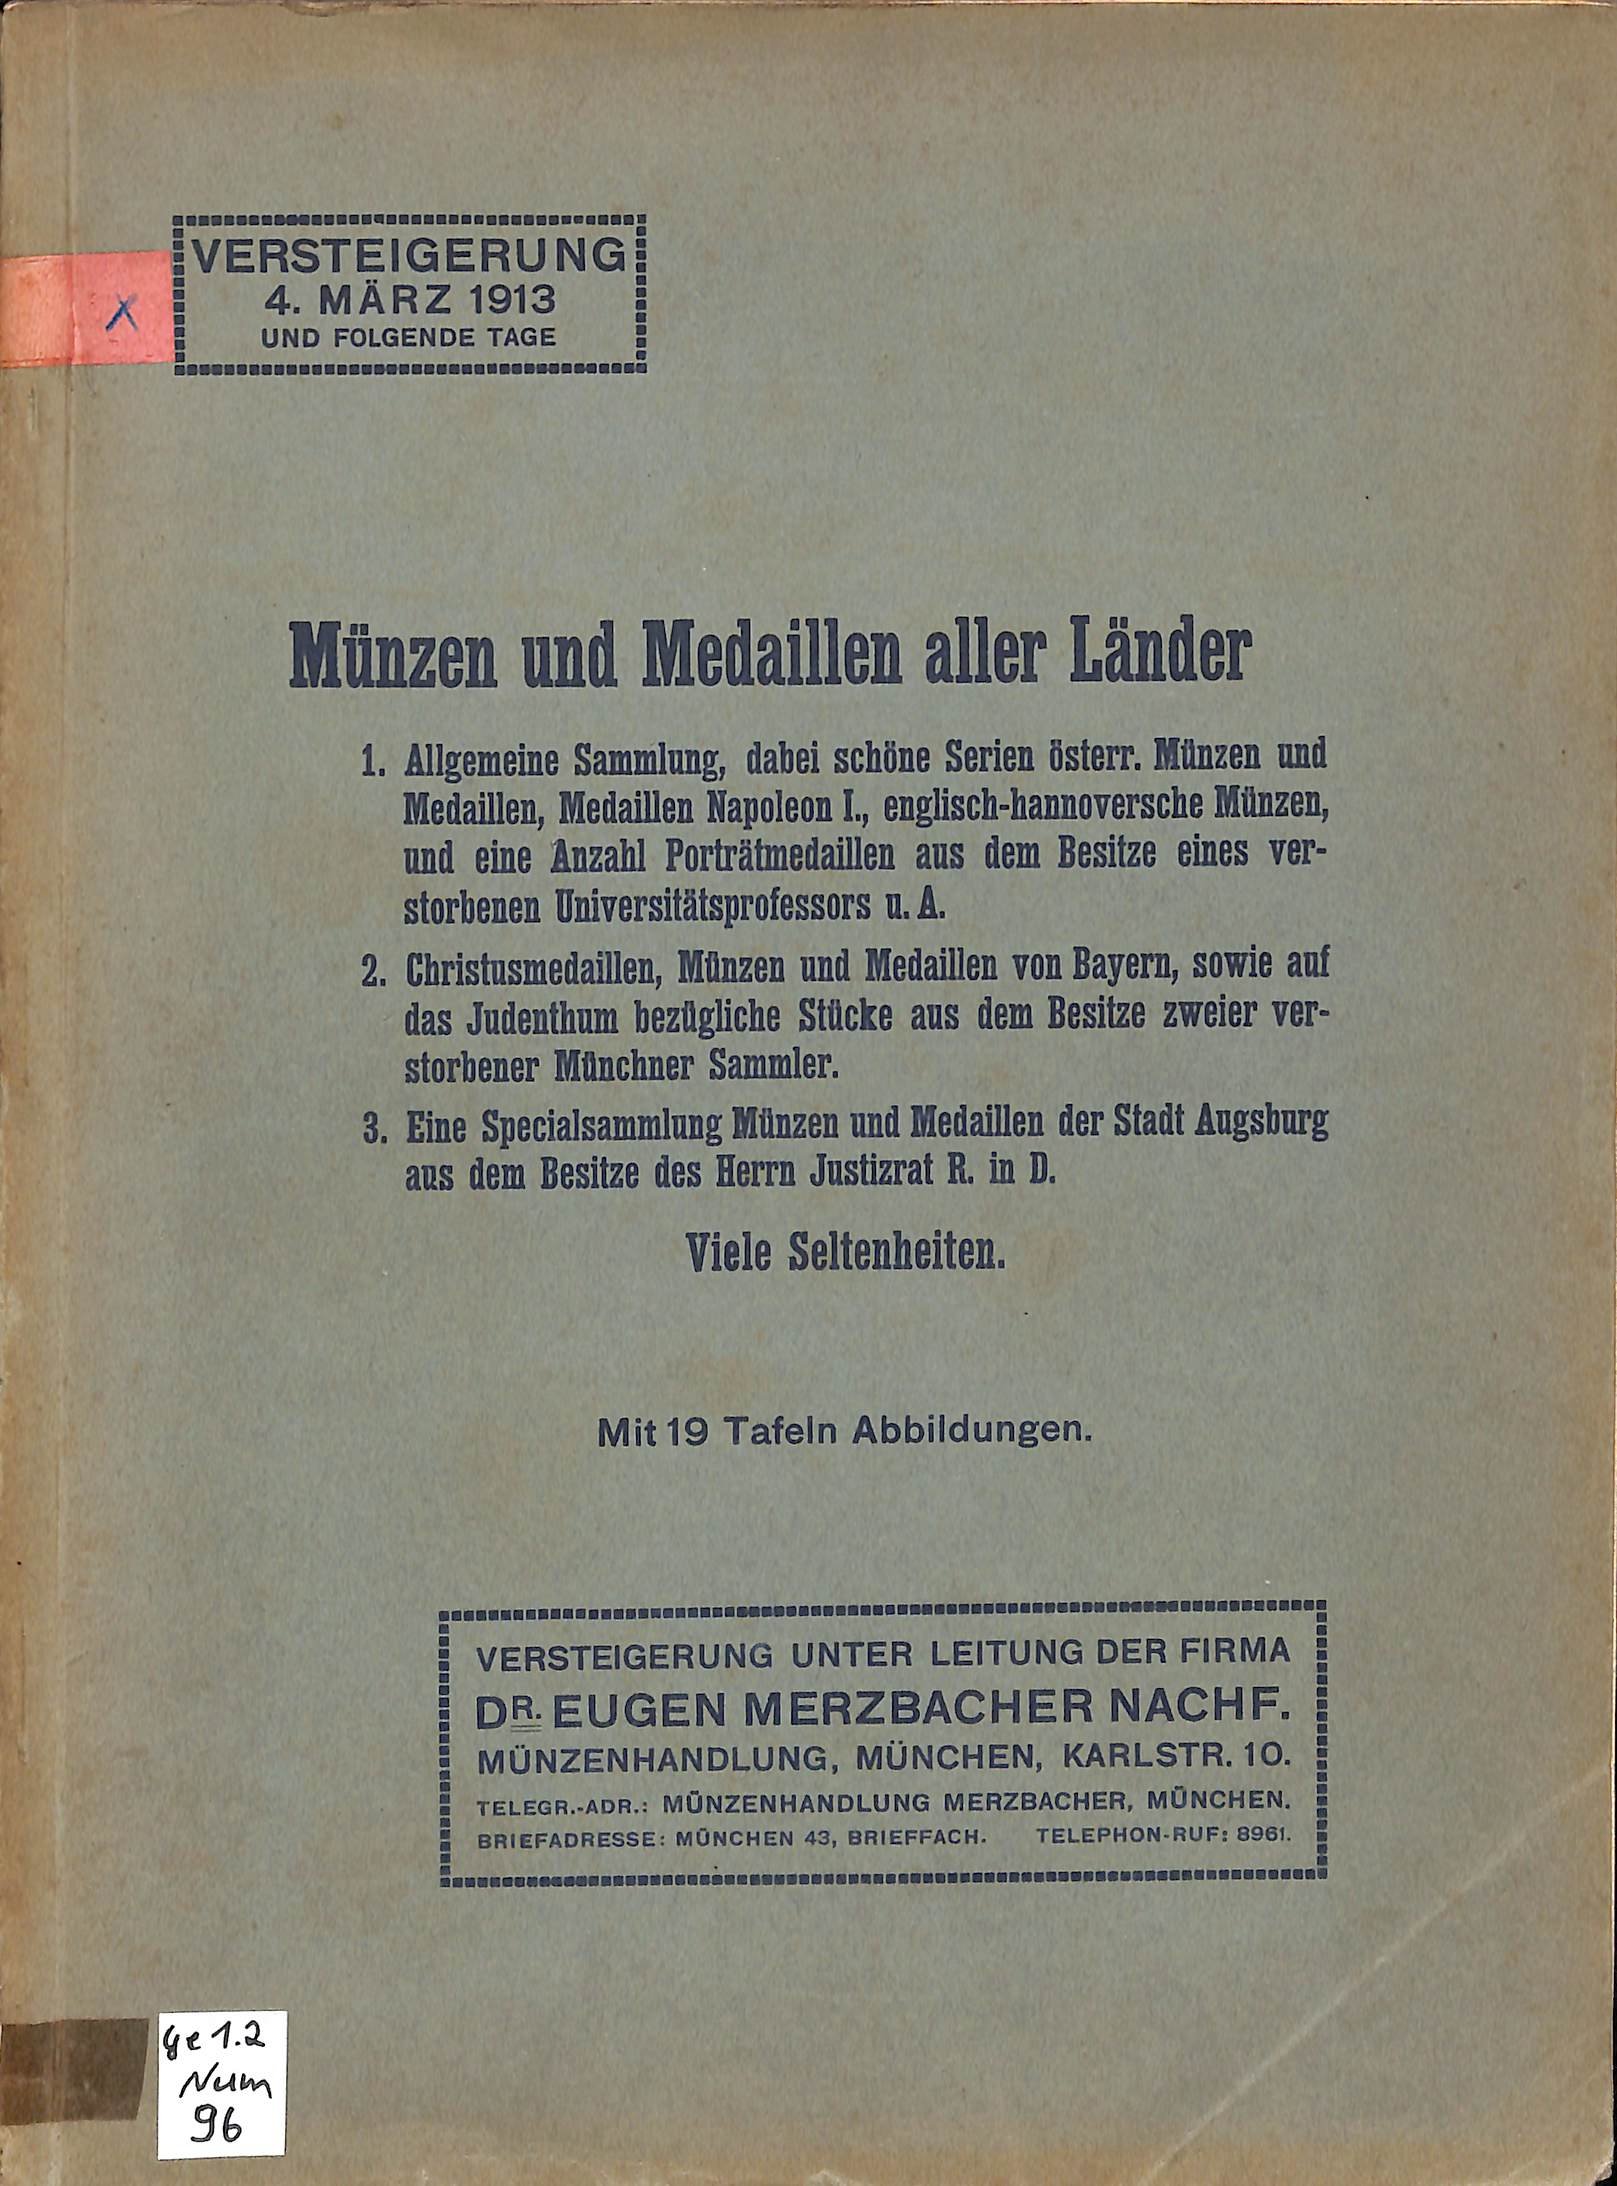 Dr. Eugen Merzbacher Nachf Münzhandlung, Münzauction 4. März 1913 (HEIMATWELTEN Zwönitz - Raritätensammlung Bruno Gebhardt CC BY-NC-SA)